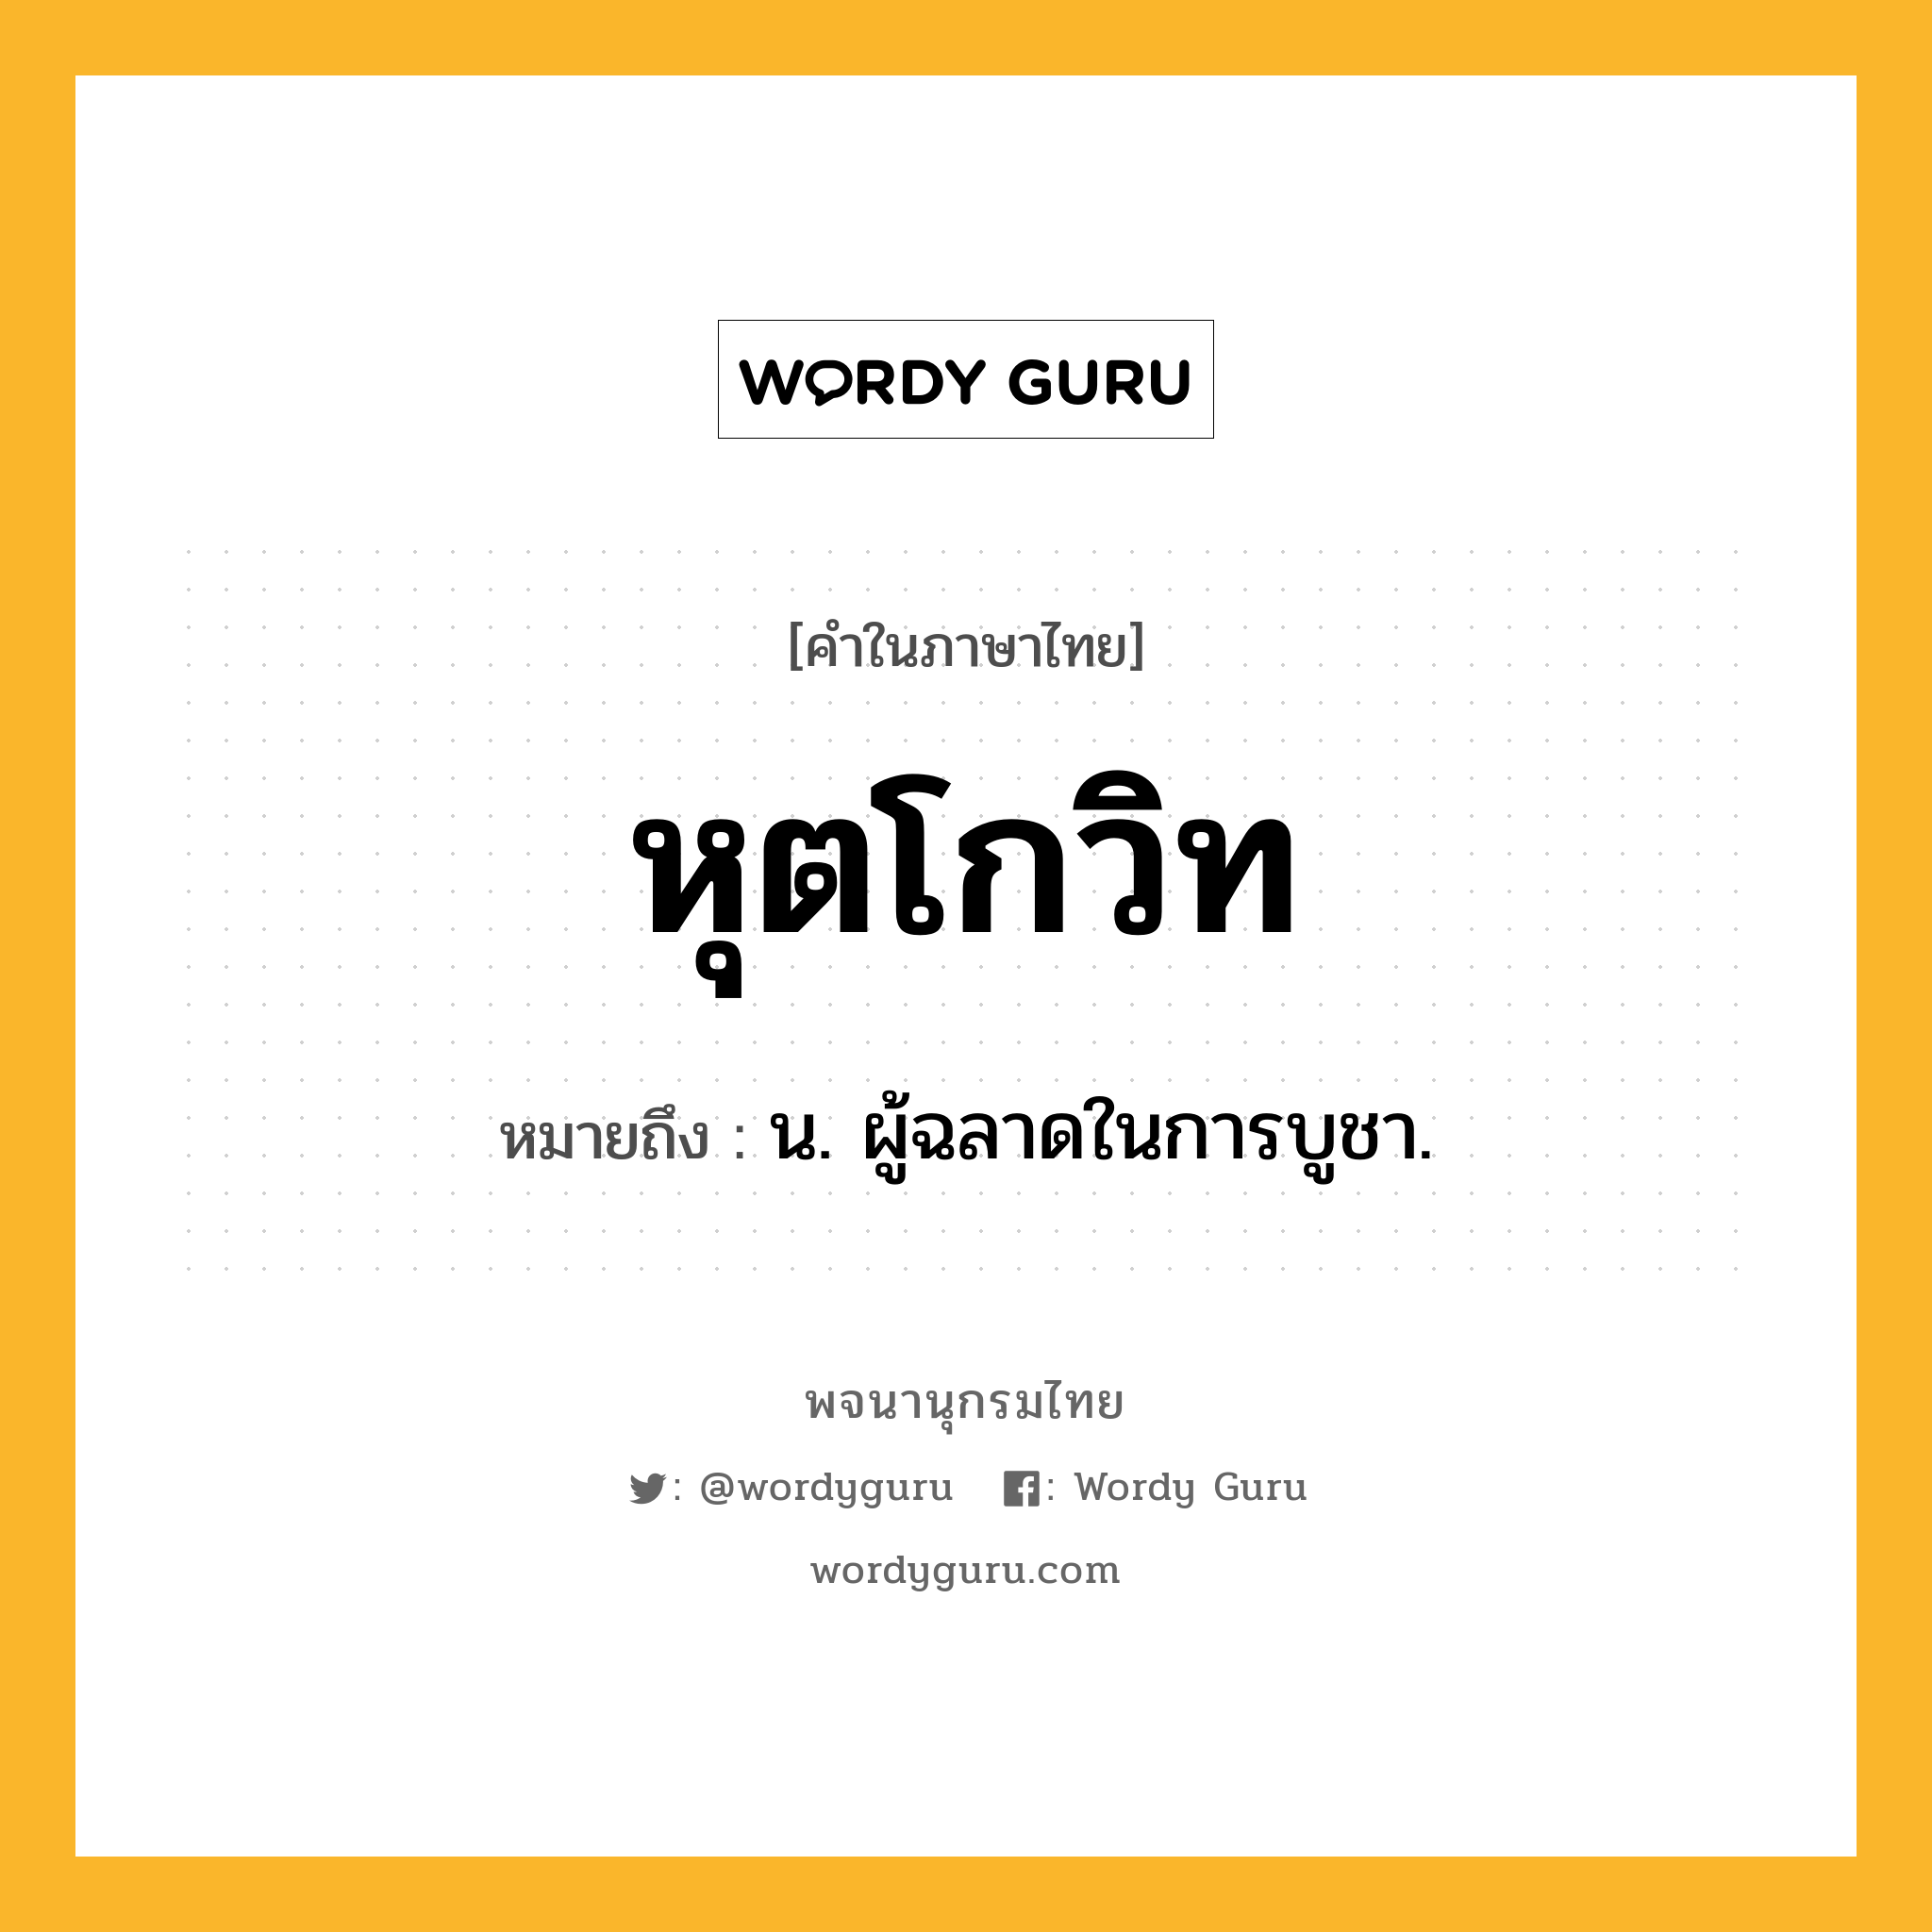 หุตโกวิท หมายถึงอะไร?, คำในภาษาไทย หุตโกวิท หมายถึง น. ผู้ฉลาดในการบูชา.